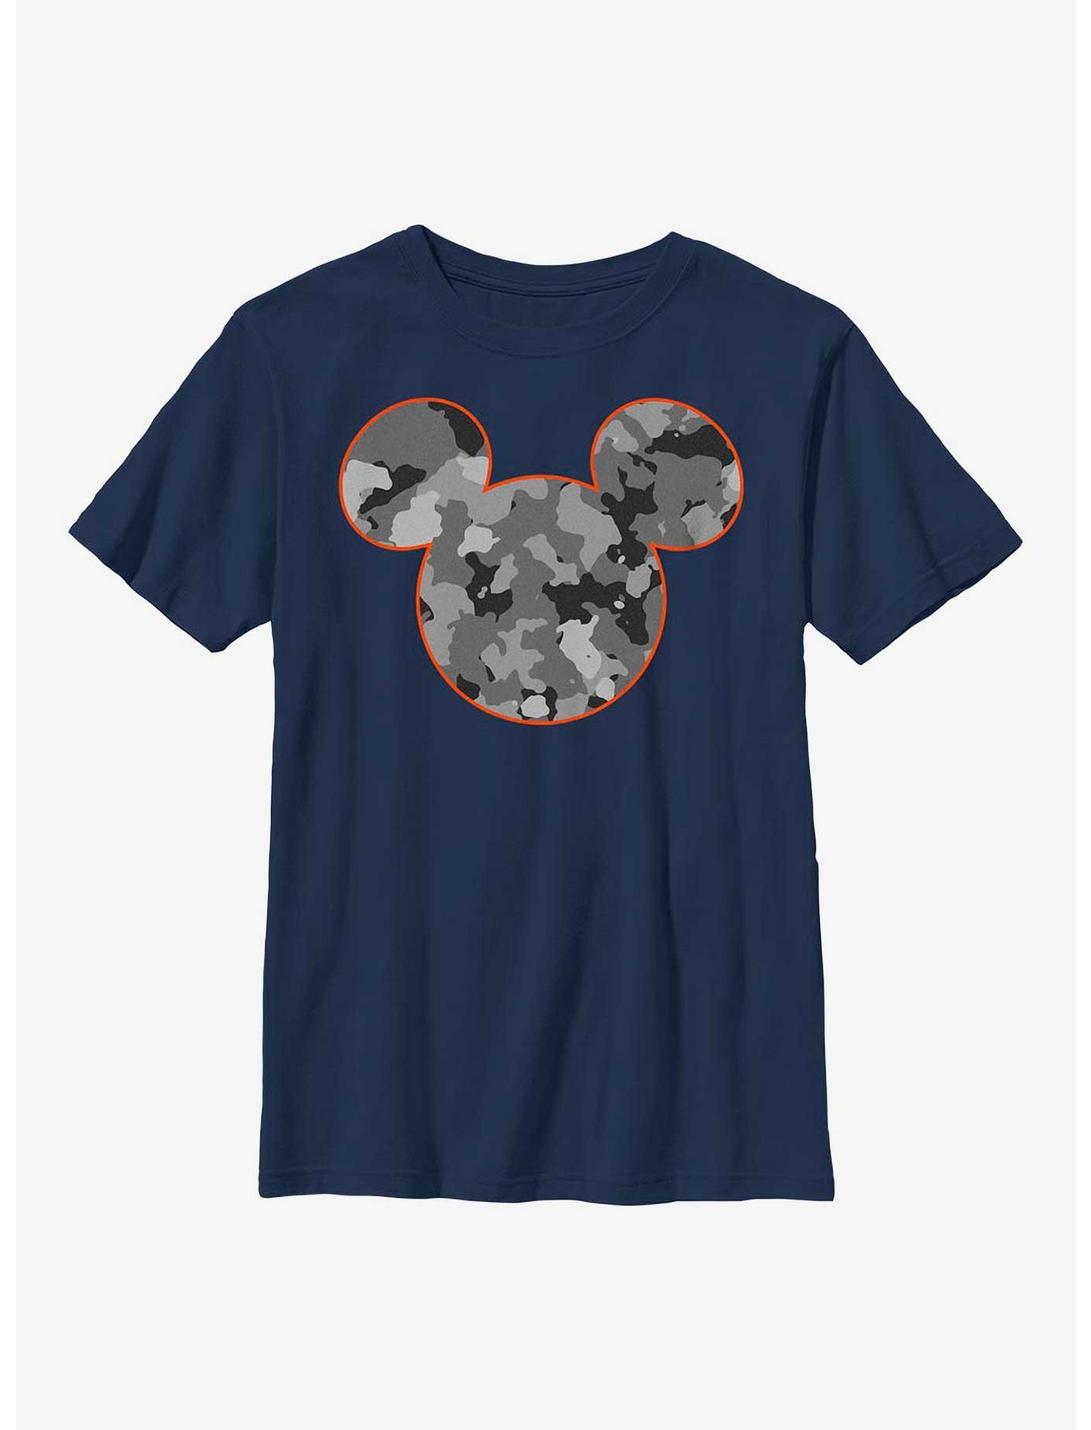 Disney Mickey Mouse Mickeys Camo Youth T-Shirt, NAVY, hi-res